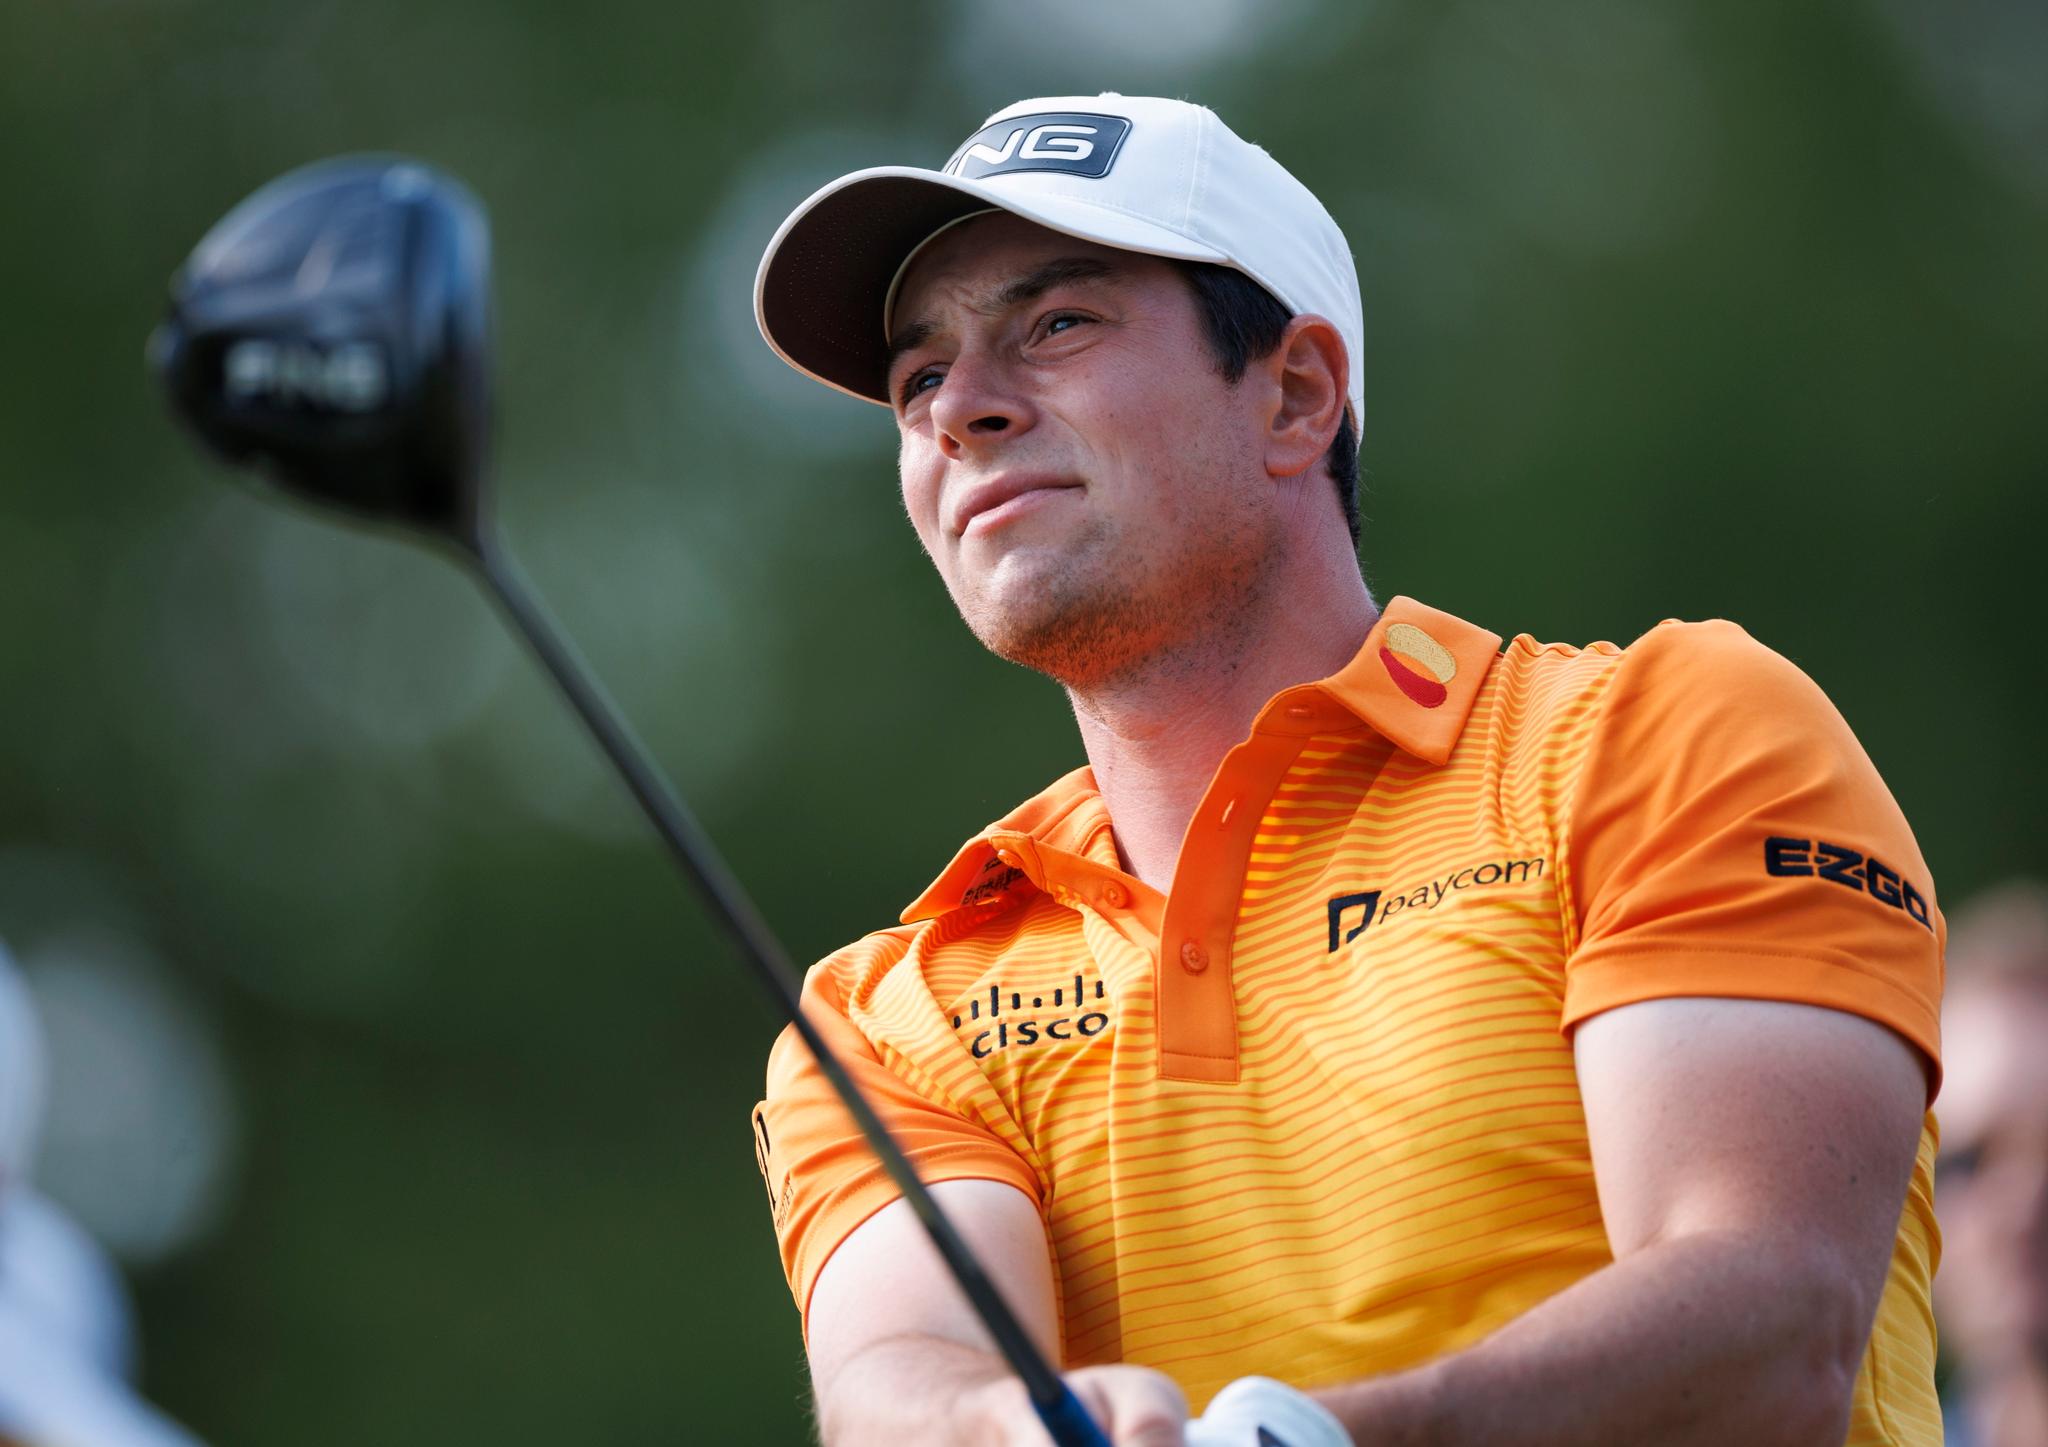 NUMMER TO: Viktor Hovlands 2. plass i PGA Championships sender ham opp på 6. plass på verdensrankingen over golfspillere. 